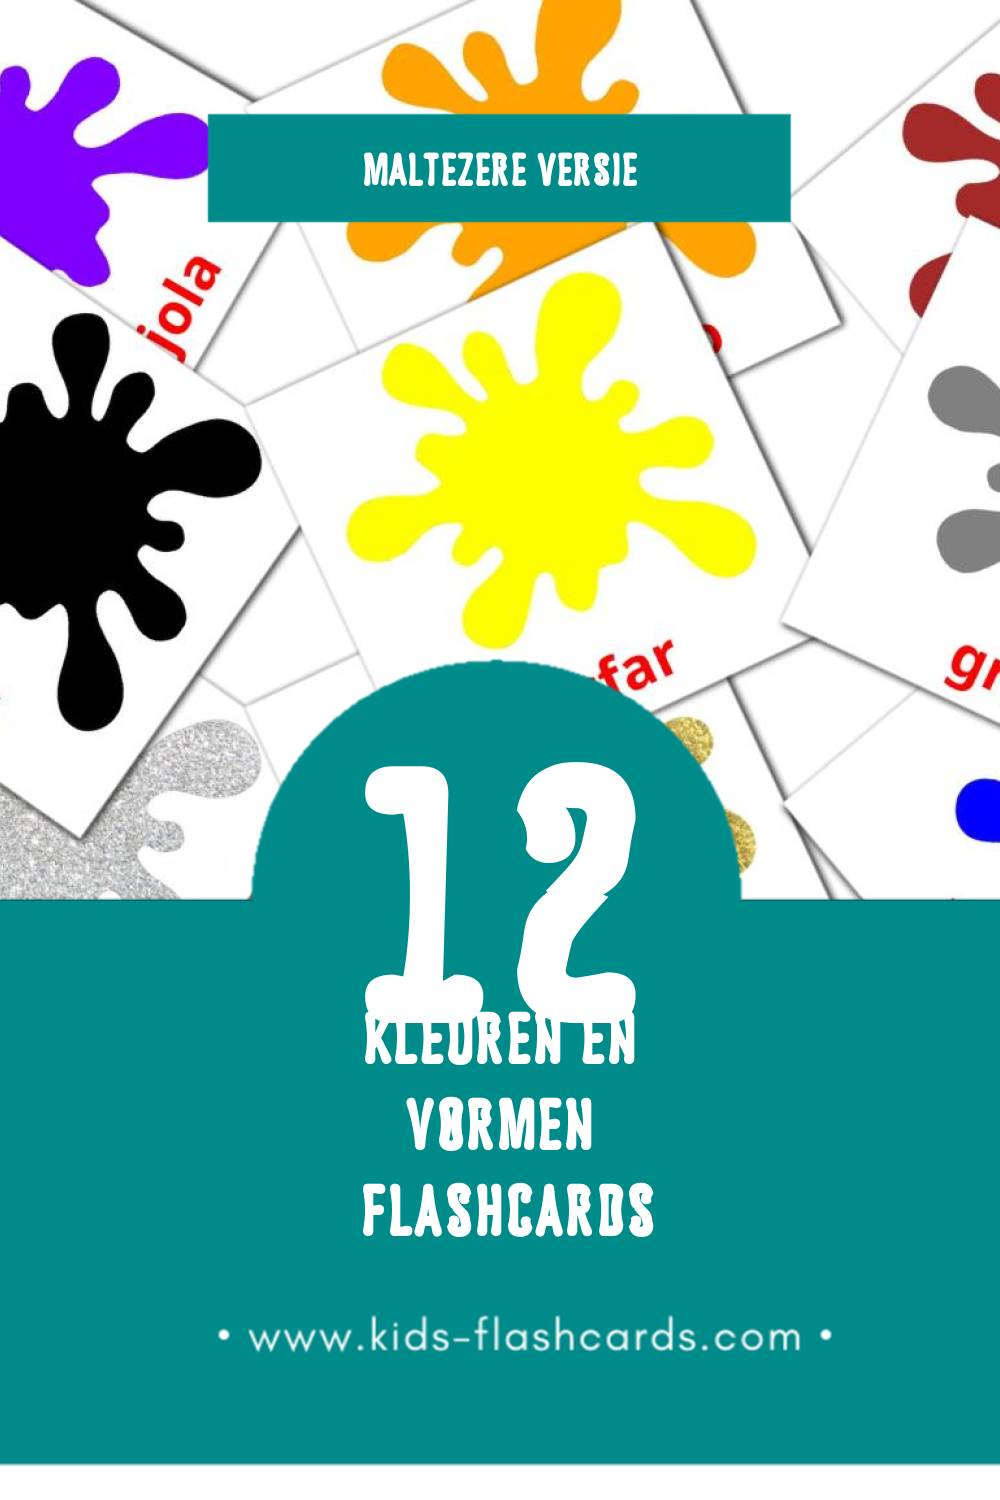 Visuele Kuluri u Forom Flashcards voor Kleuters (12 kaarten in het Maltezer)